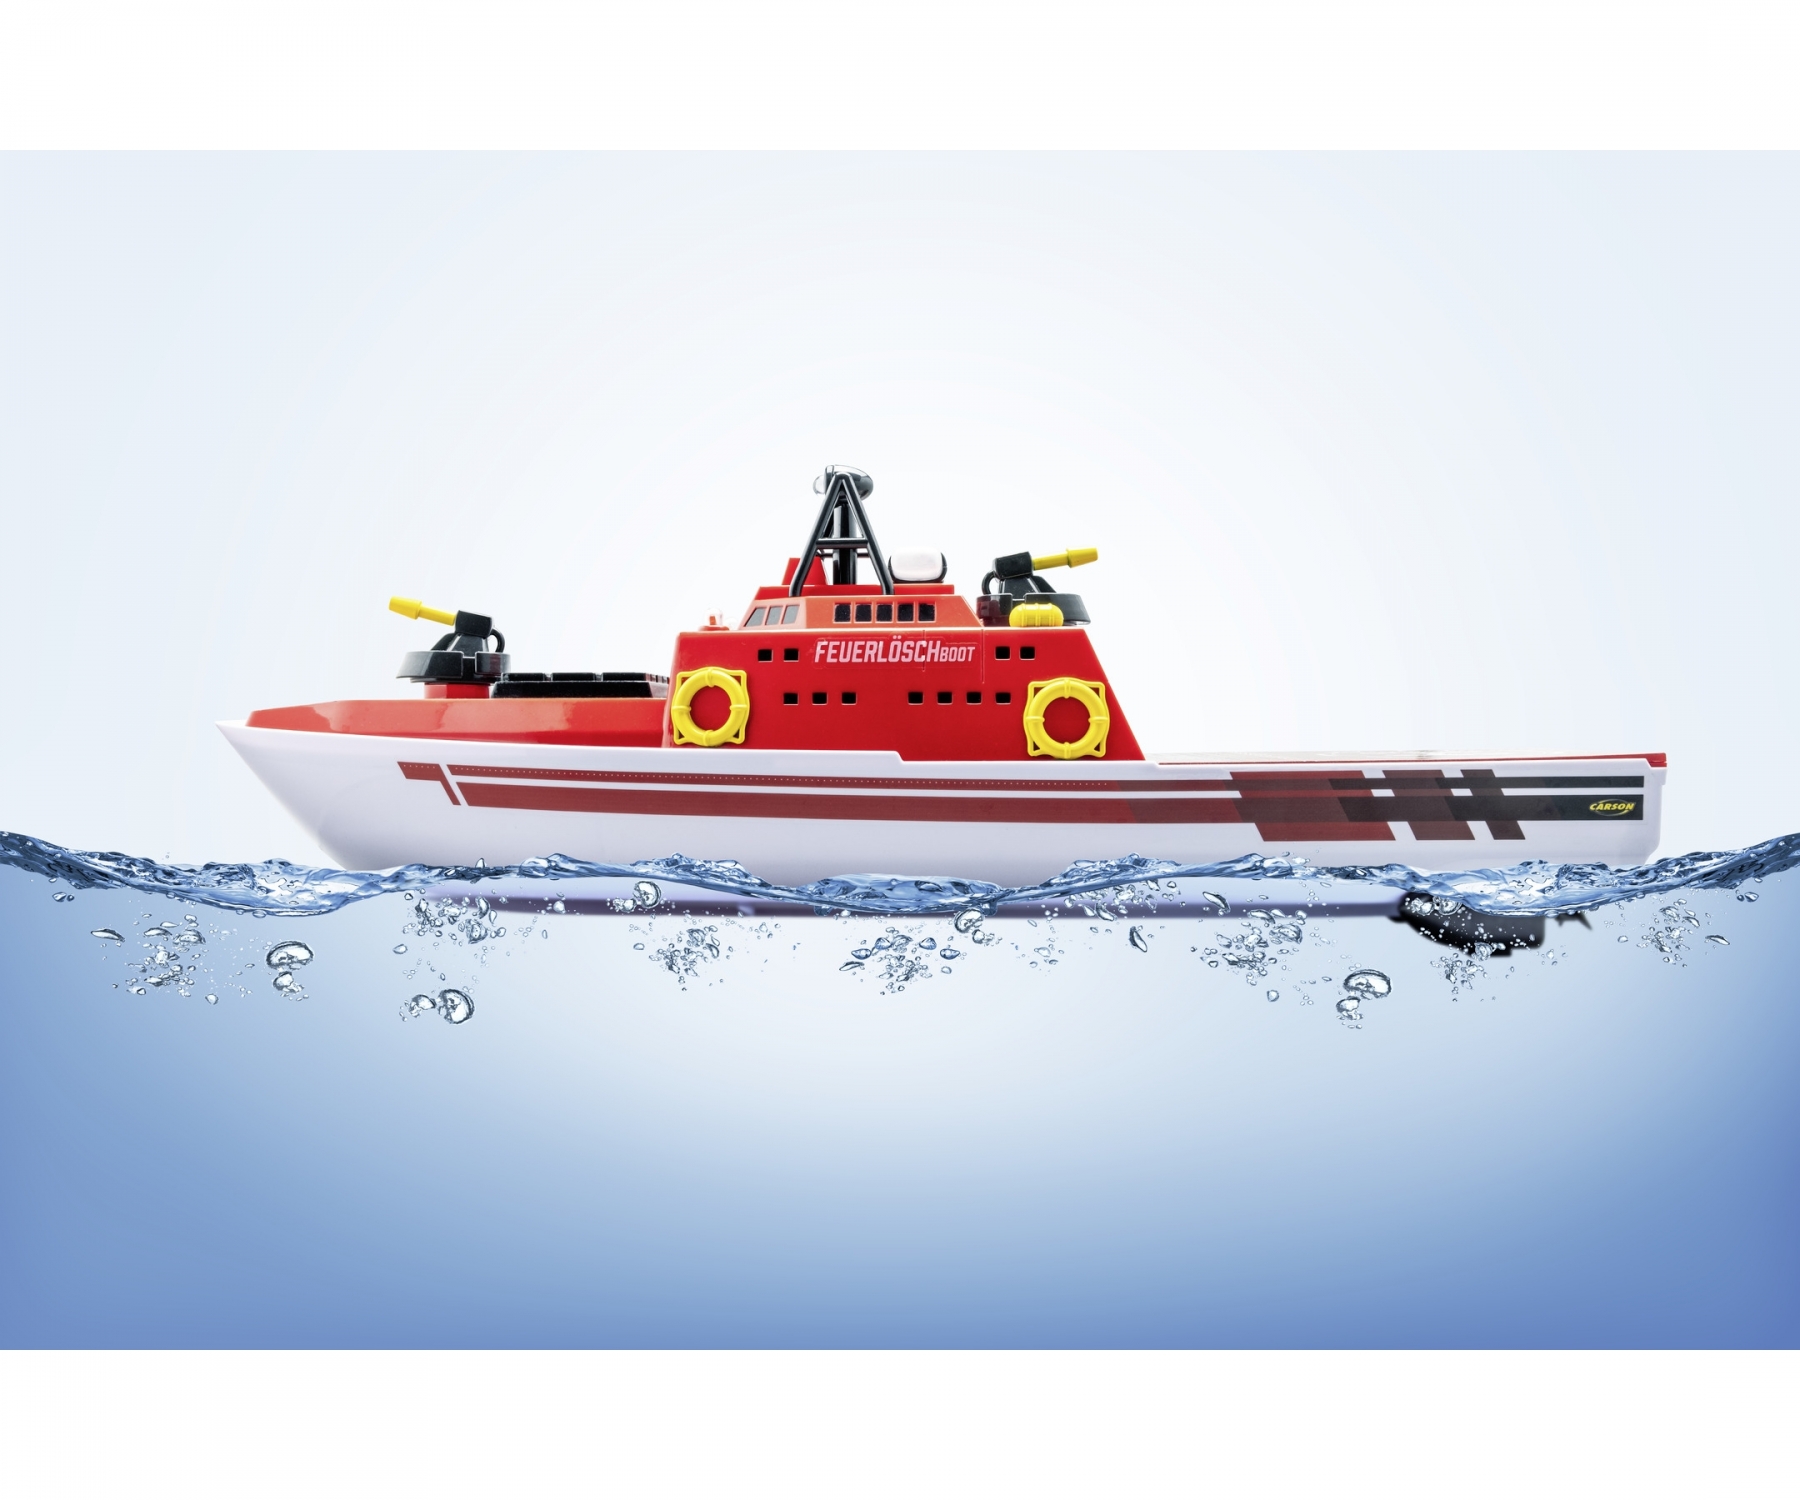 carson-500108051-4-RC-Feuerlöschboot-mit-Wasserspritze-Spritzfunktion